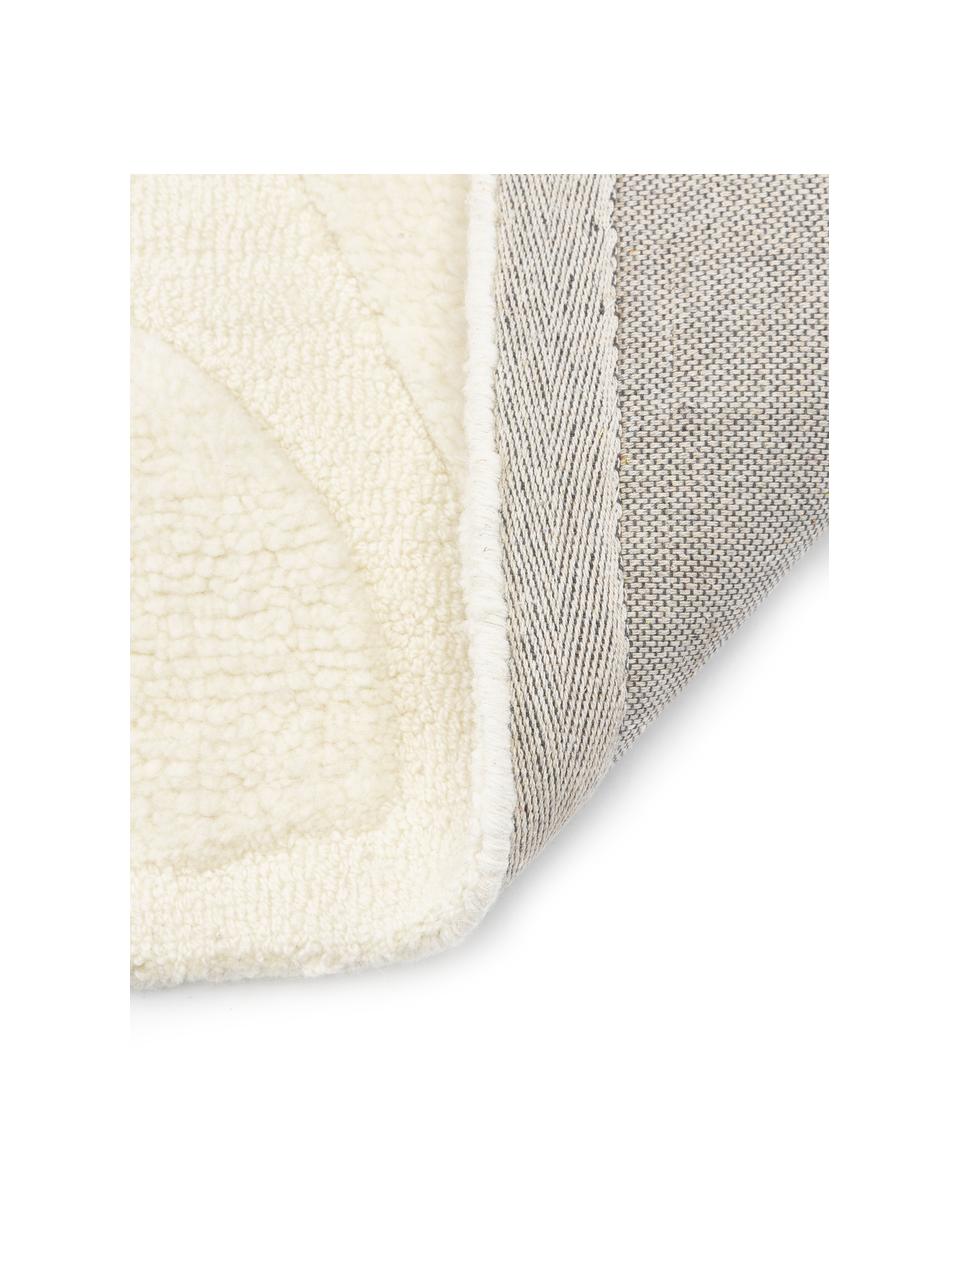 Tapis en laine tissé à la main Clio, Blanc crème, larg. 160 x long. 230 cm (taille M)